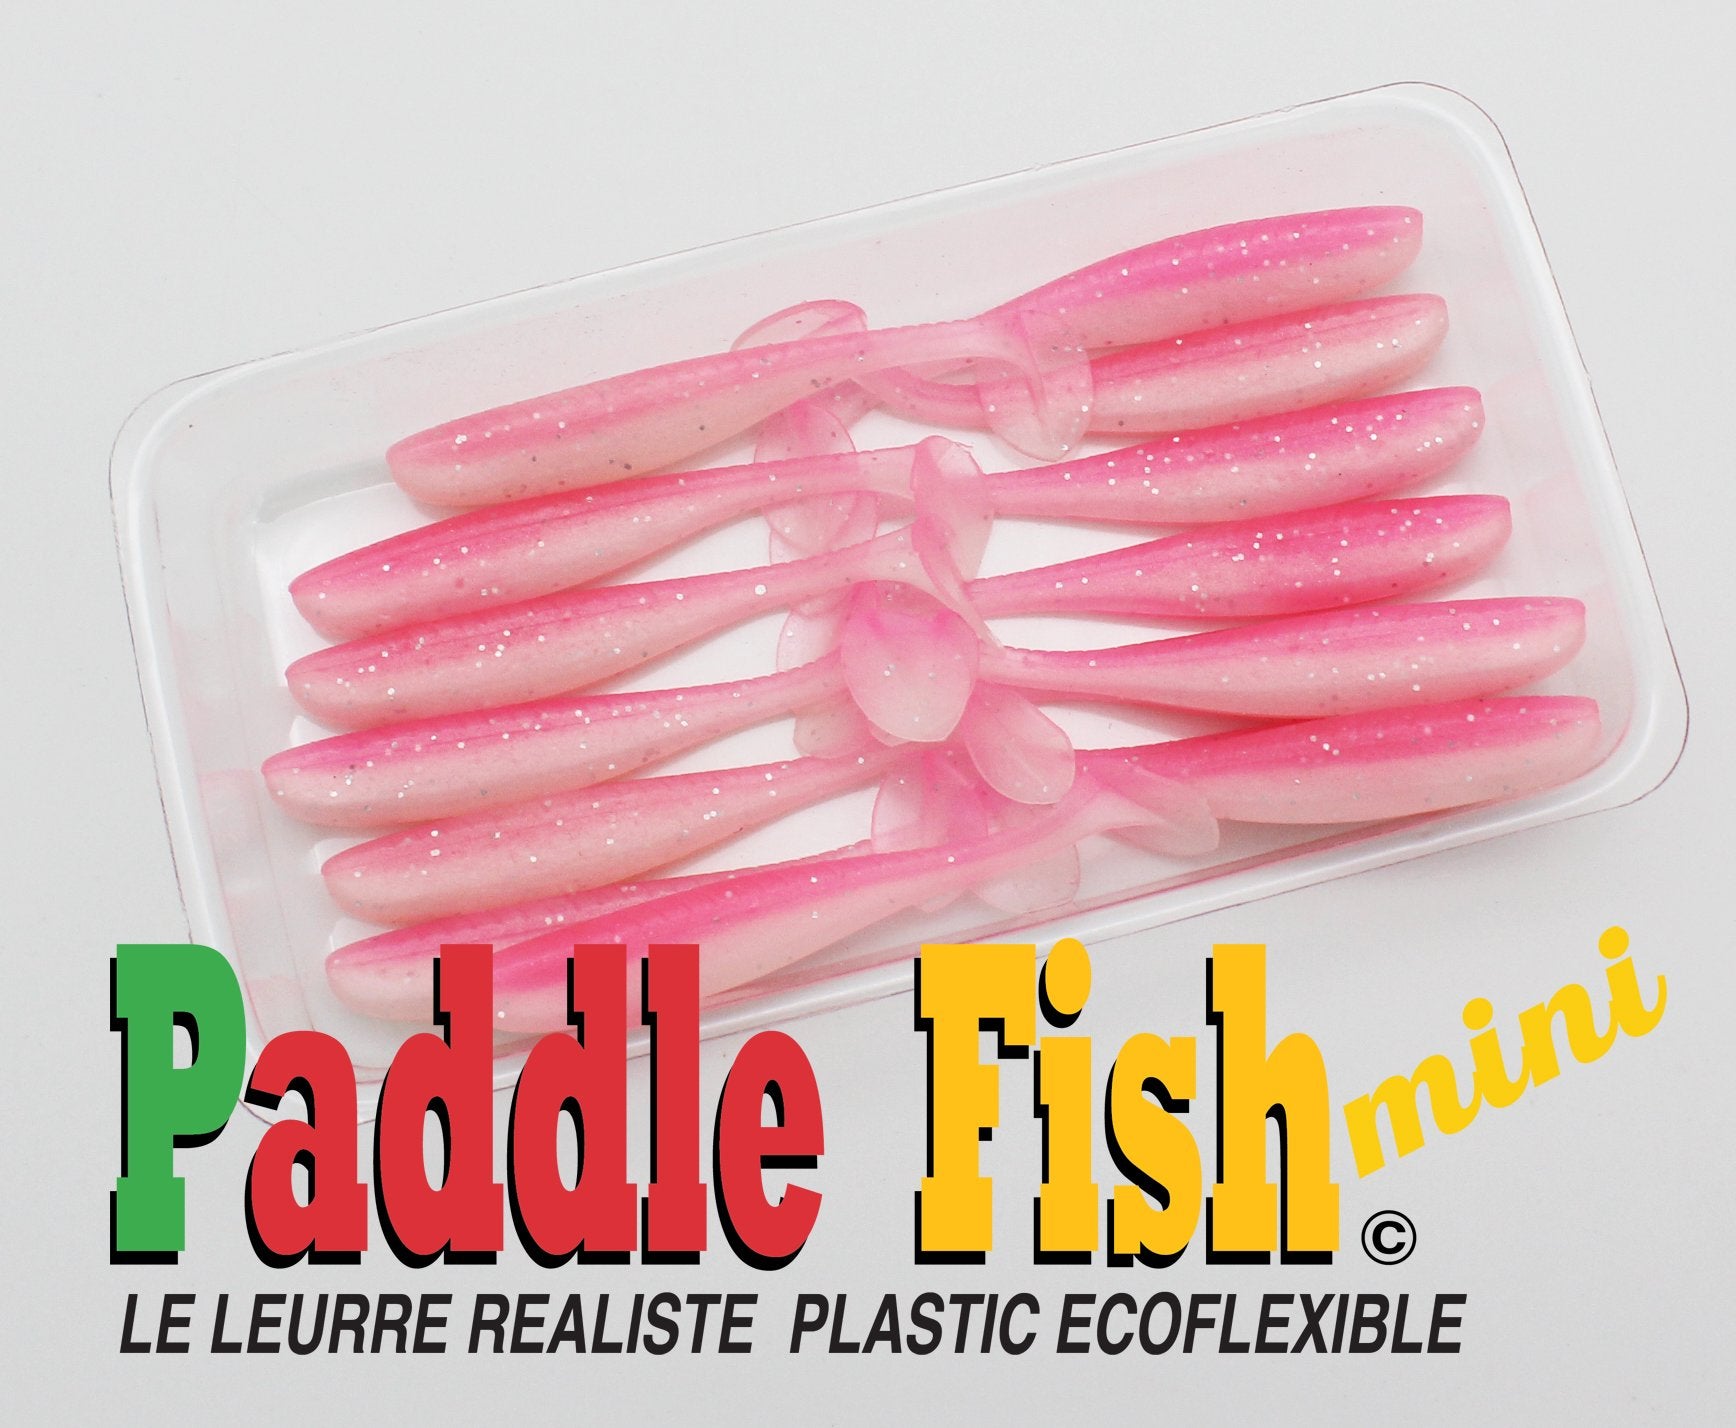 1.5” Paddle Tail Swimbait Soft Plastic Keitech Style Perch Crappie Bluegill  20pk - Conseil scolaire francophone de Terre-Neuve et Labrador